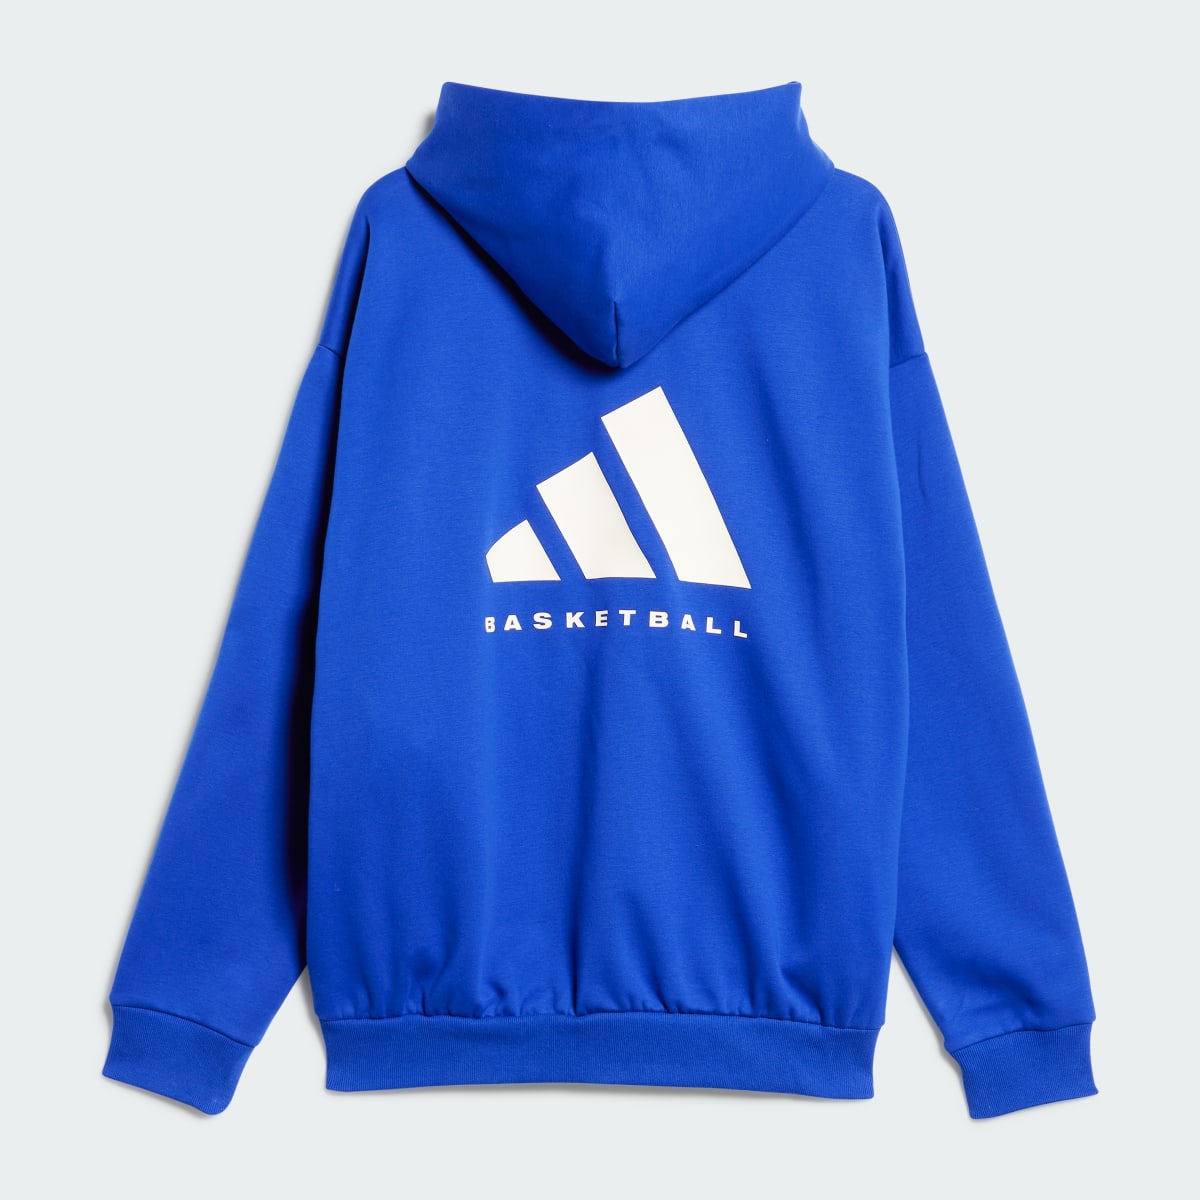 Adidas Basketball Hoodie. 5